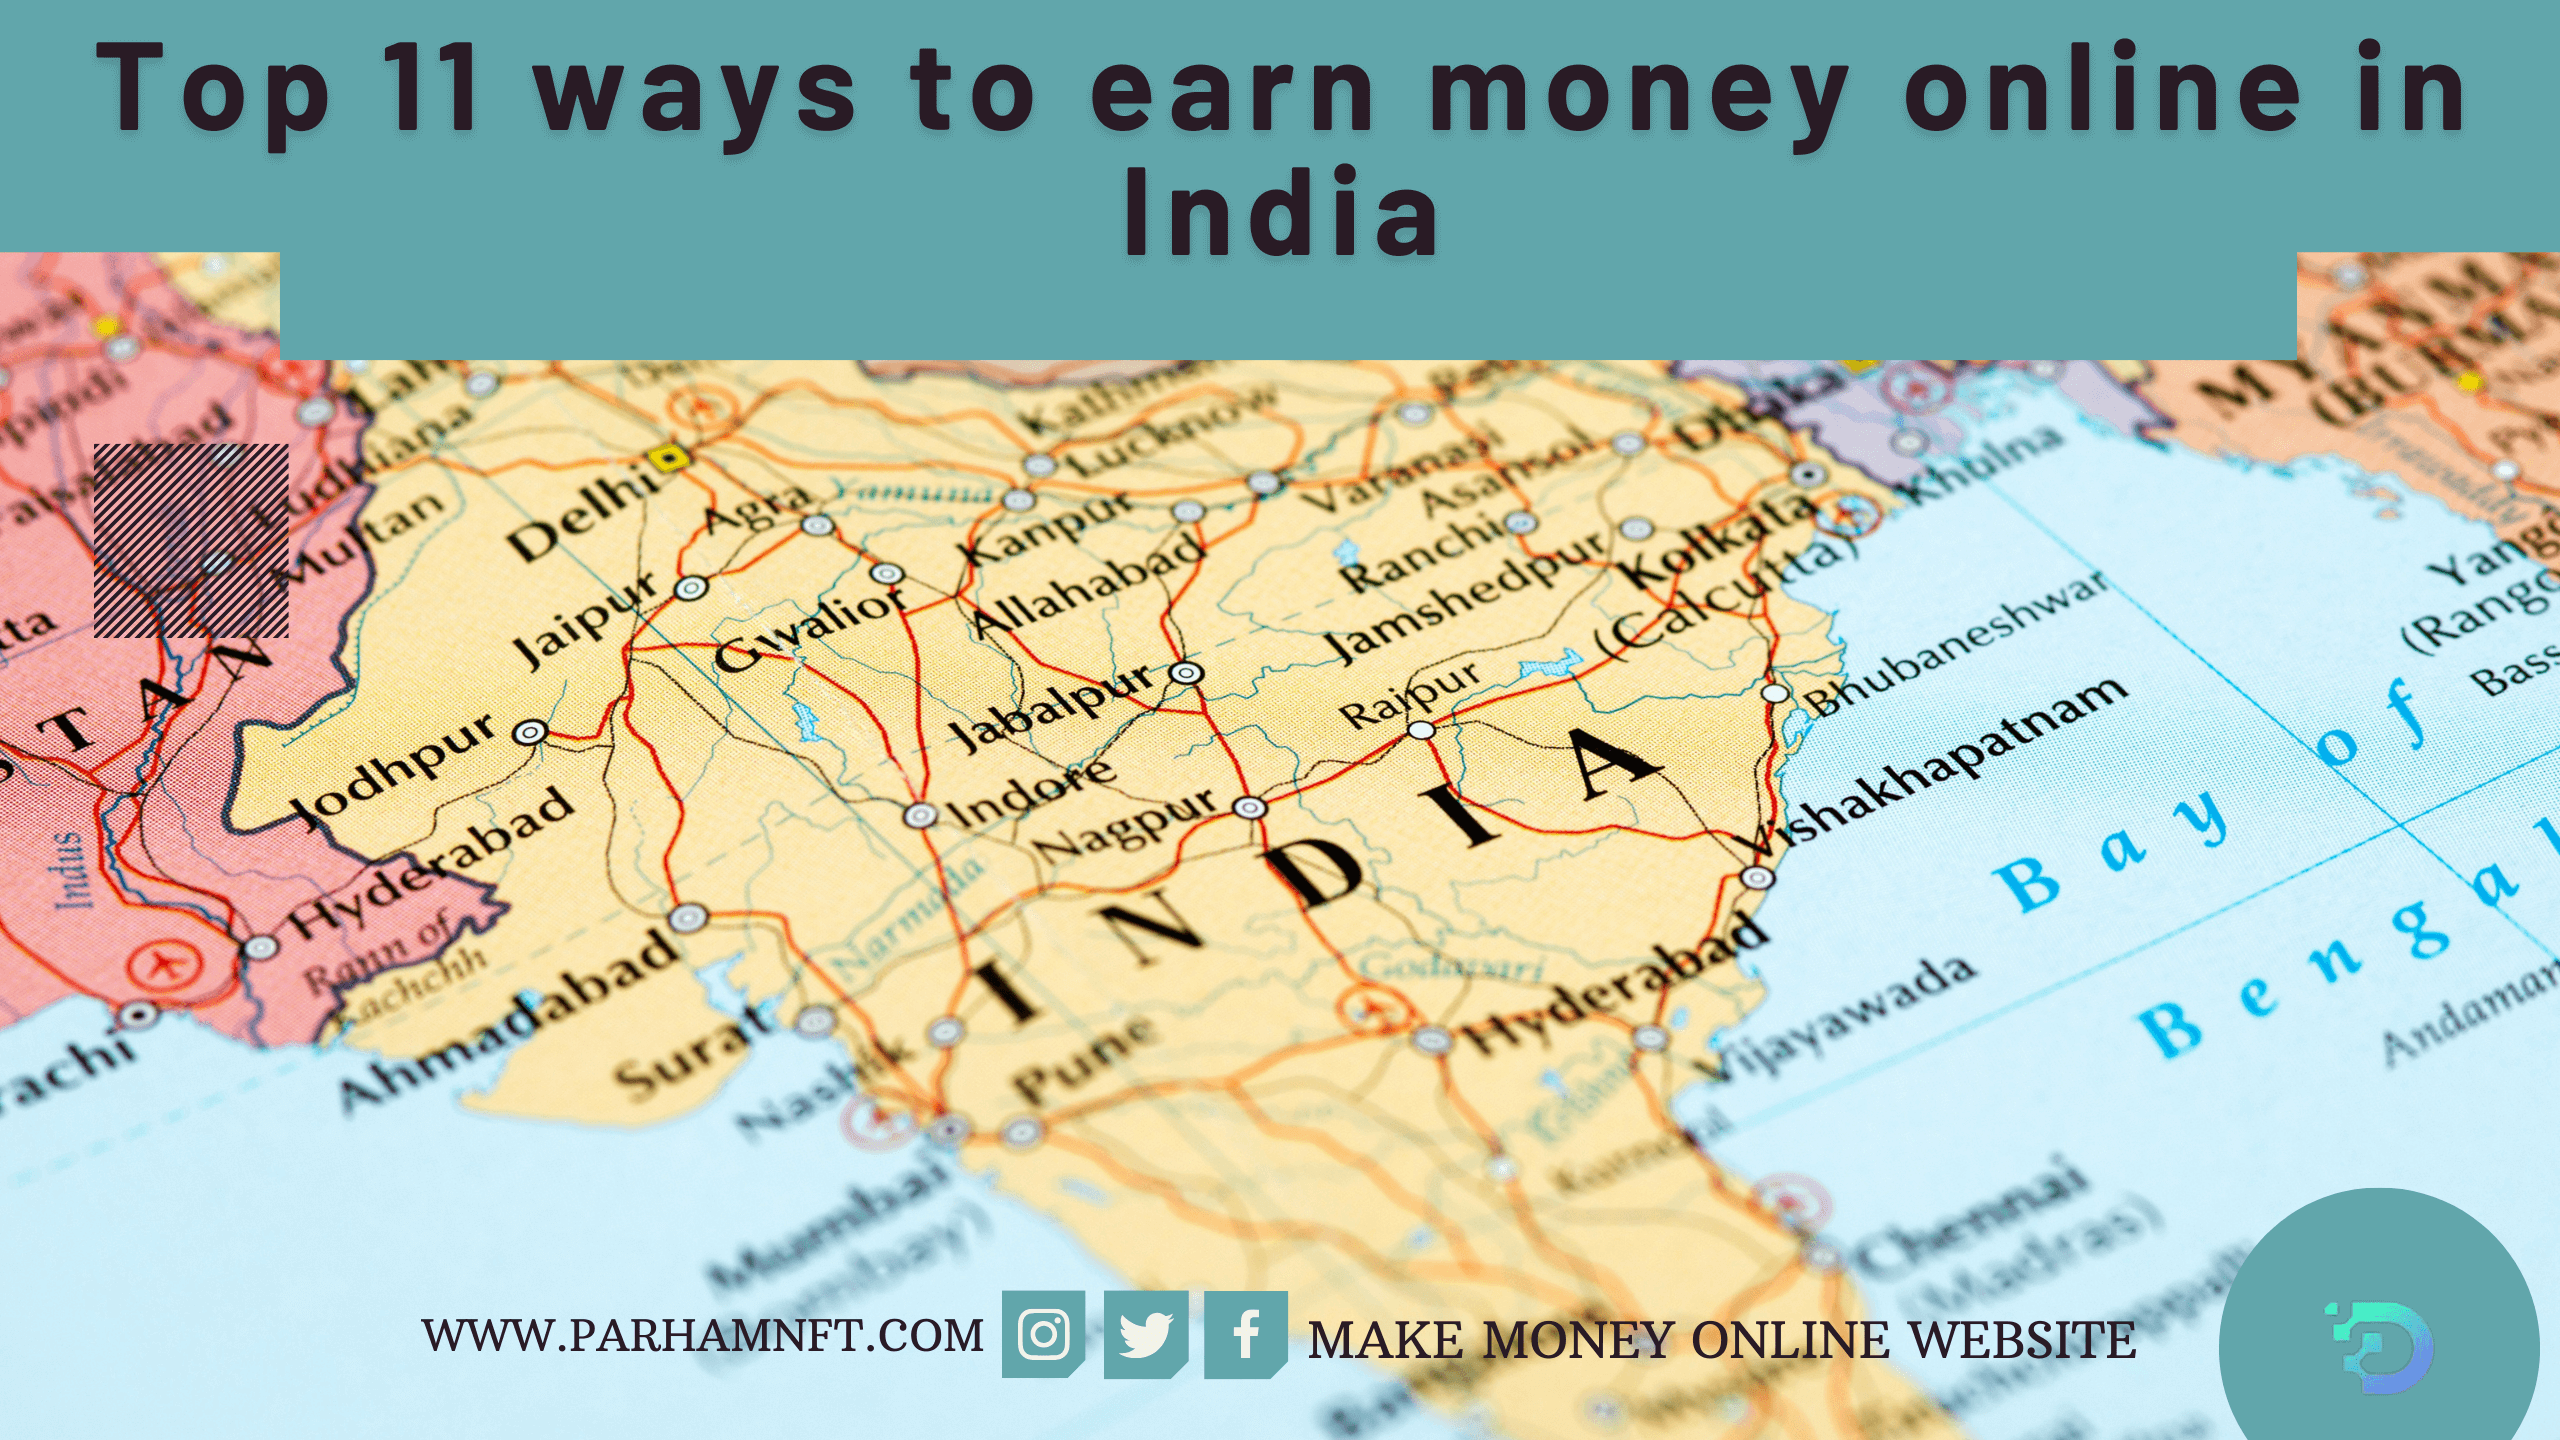 Top 11 ways to earn money online in India